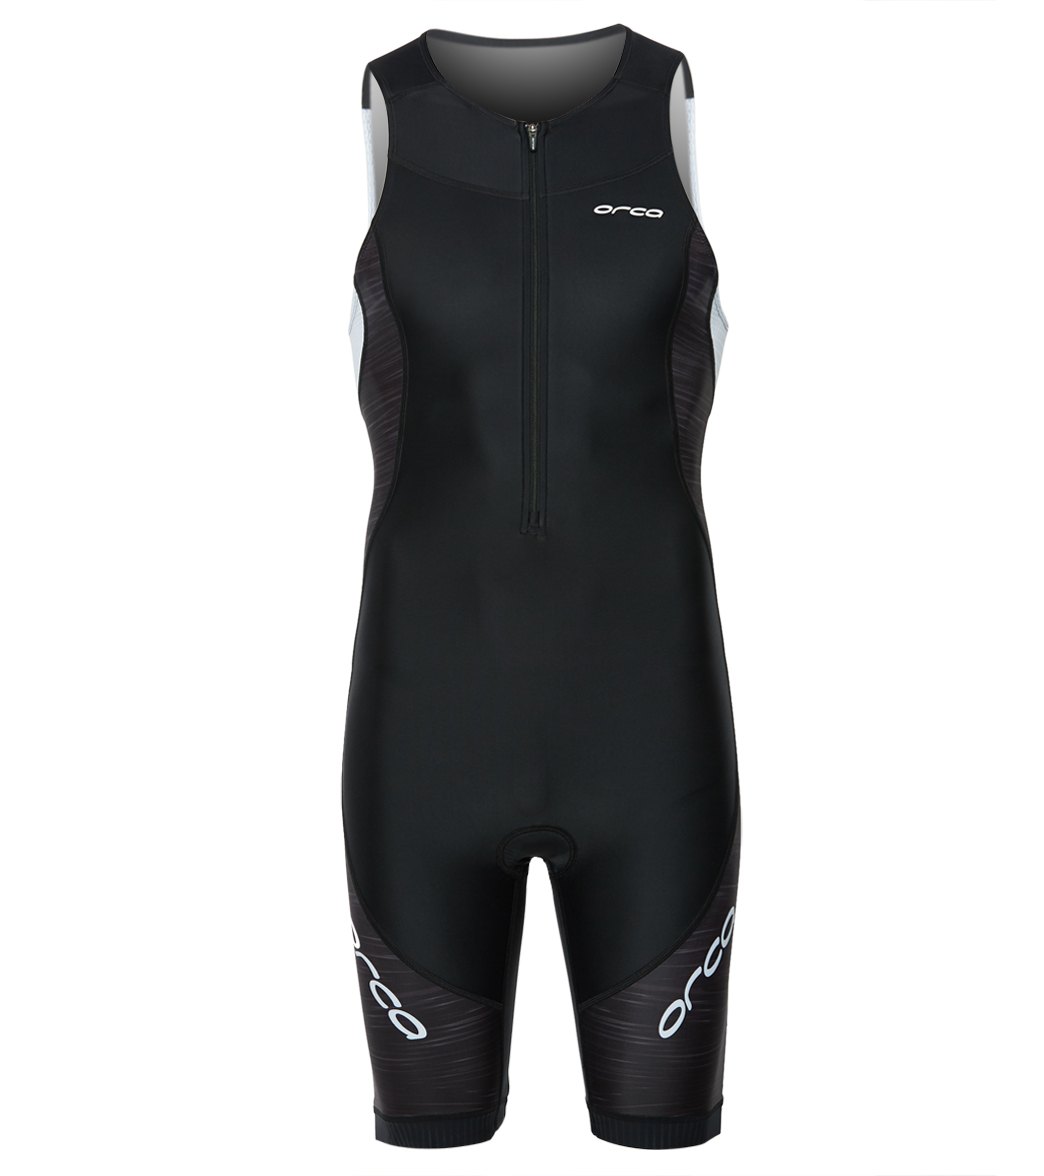 Orca Men's Core Triathlon Race Suit - Black/White Small - Swimoutlet.com